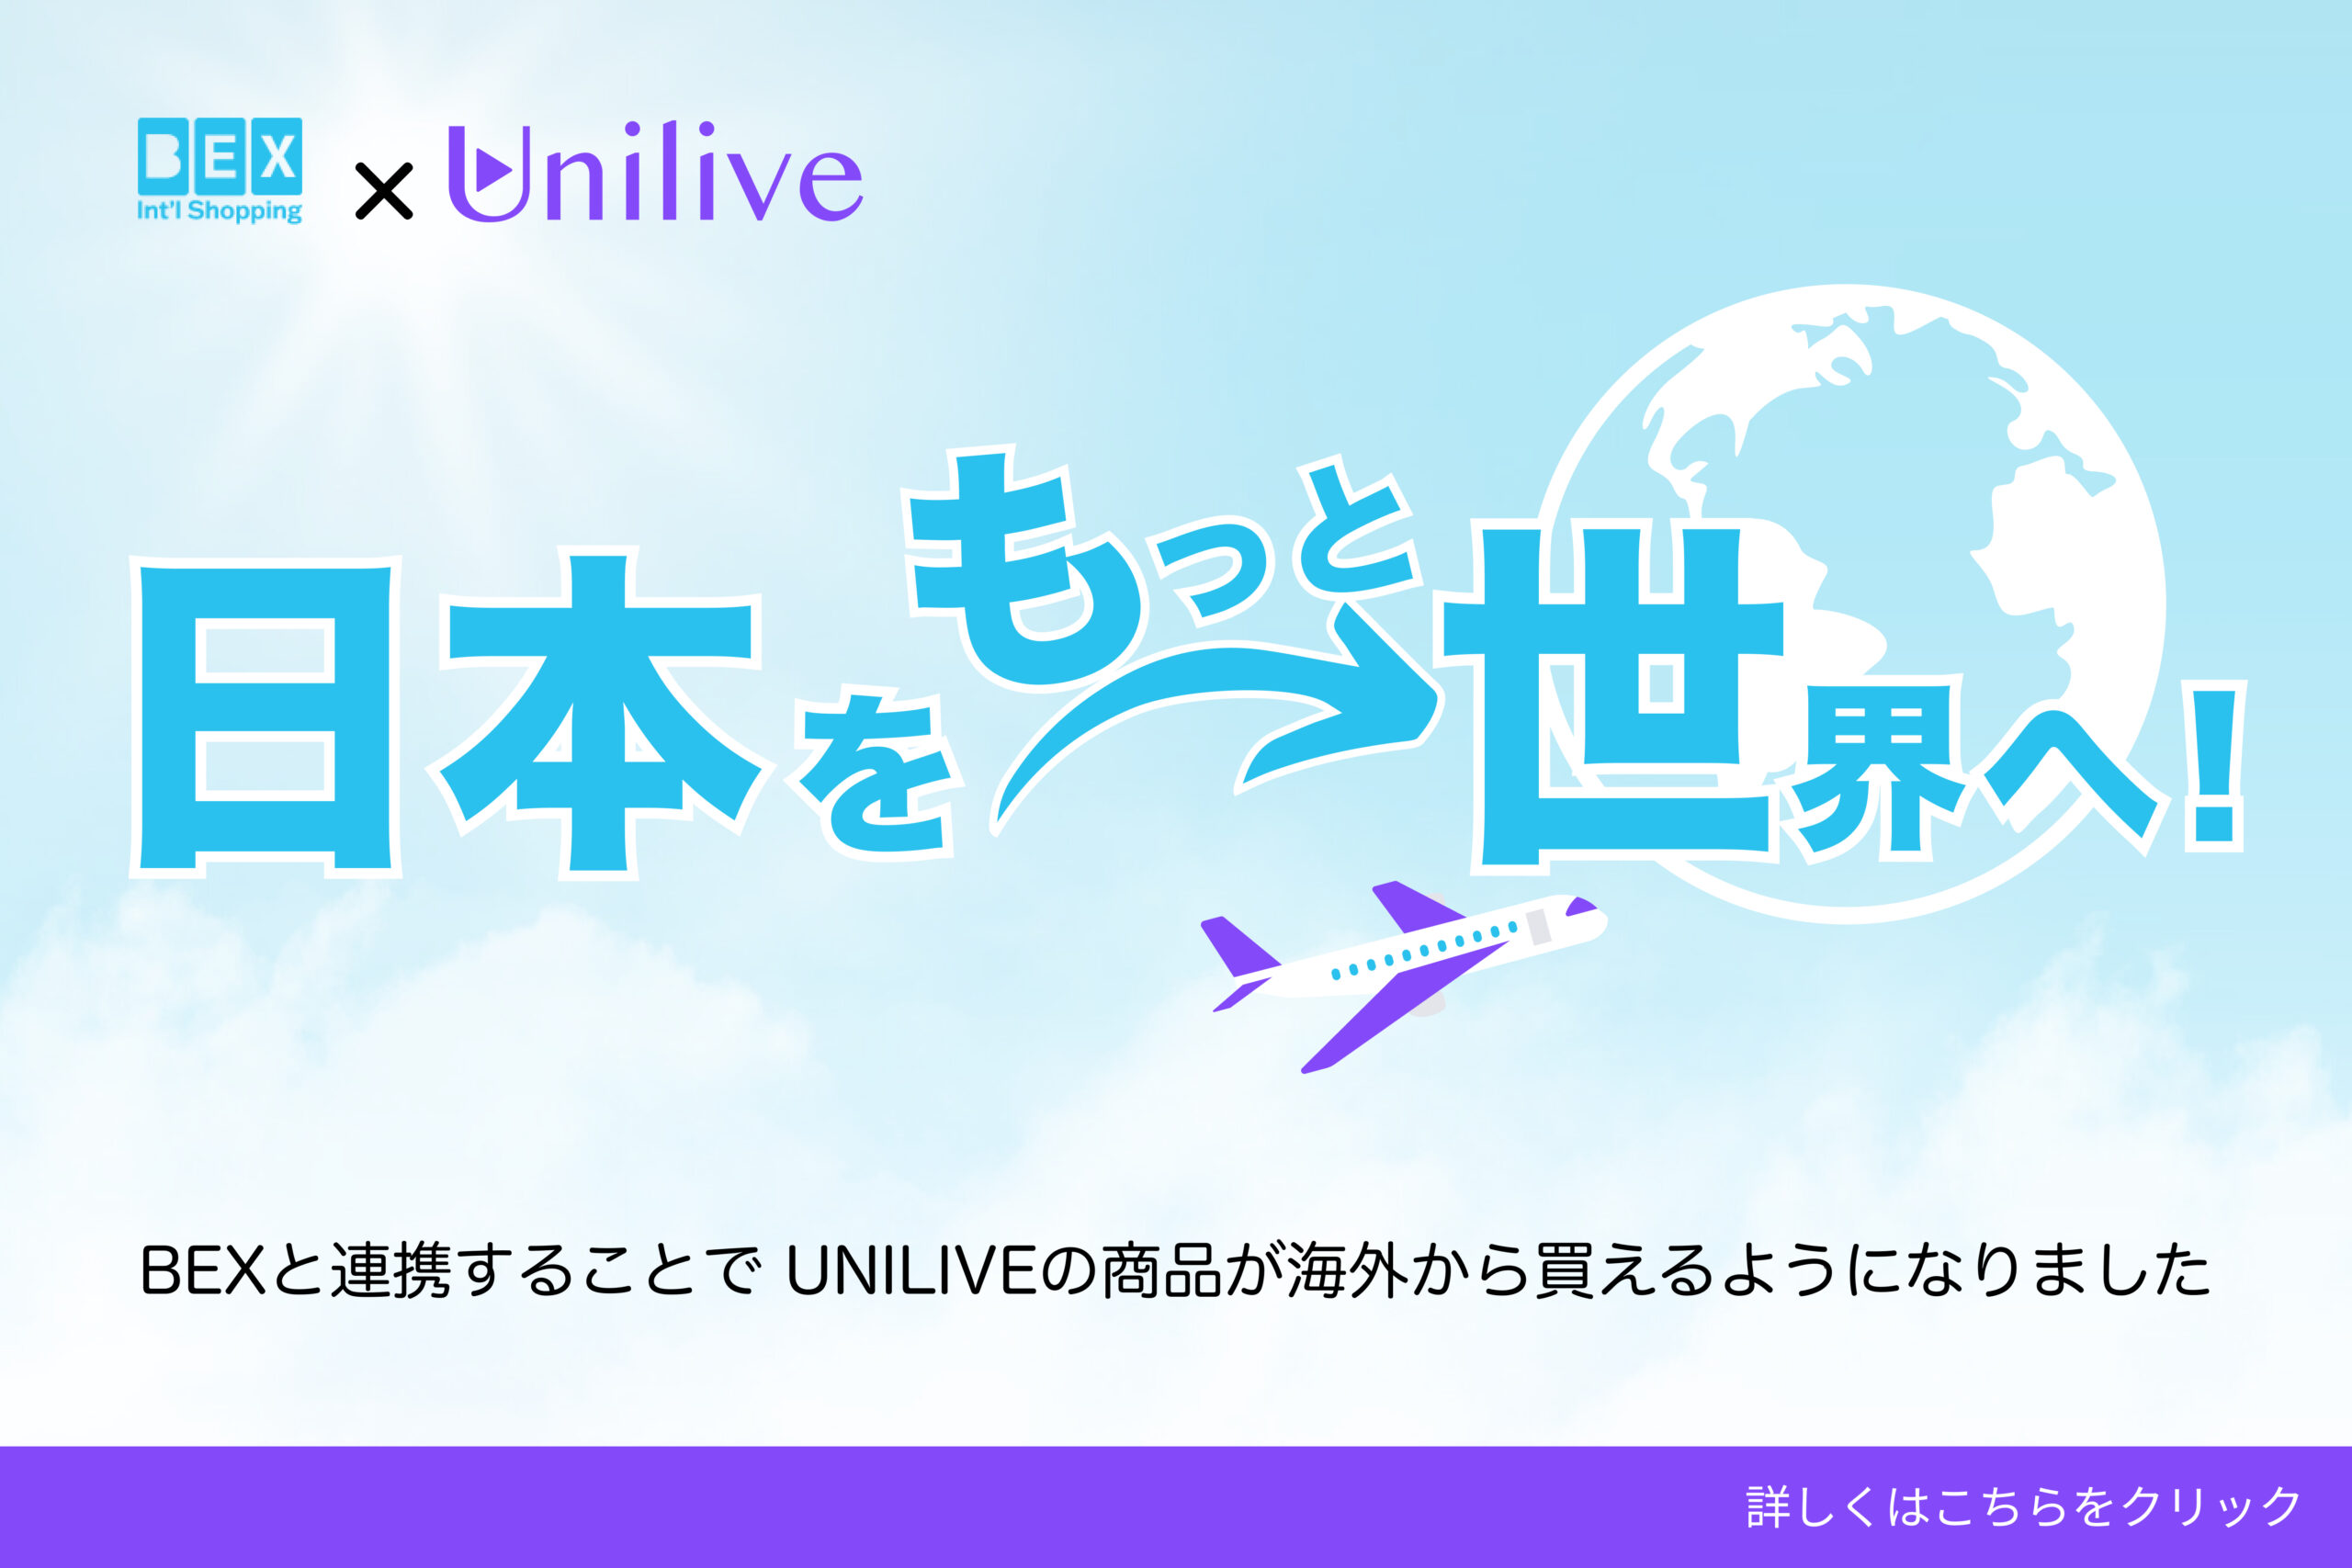 日本初のライブコマース総合プラットホーム「UNILIVE」を提供するYouTeacher株式会社と業務提携を開始。